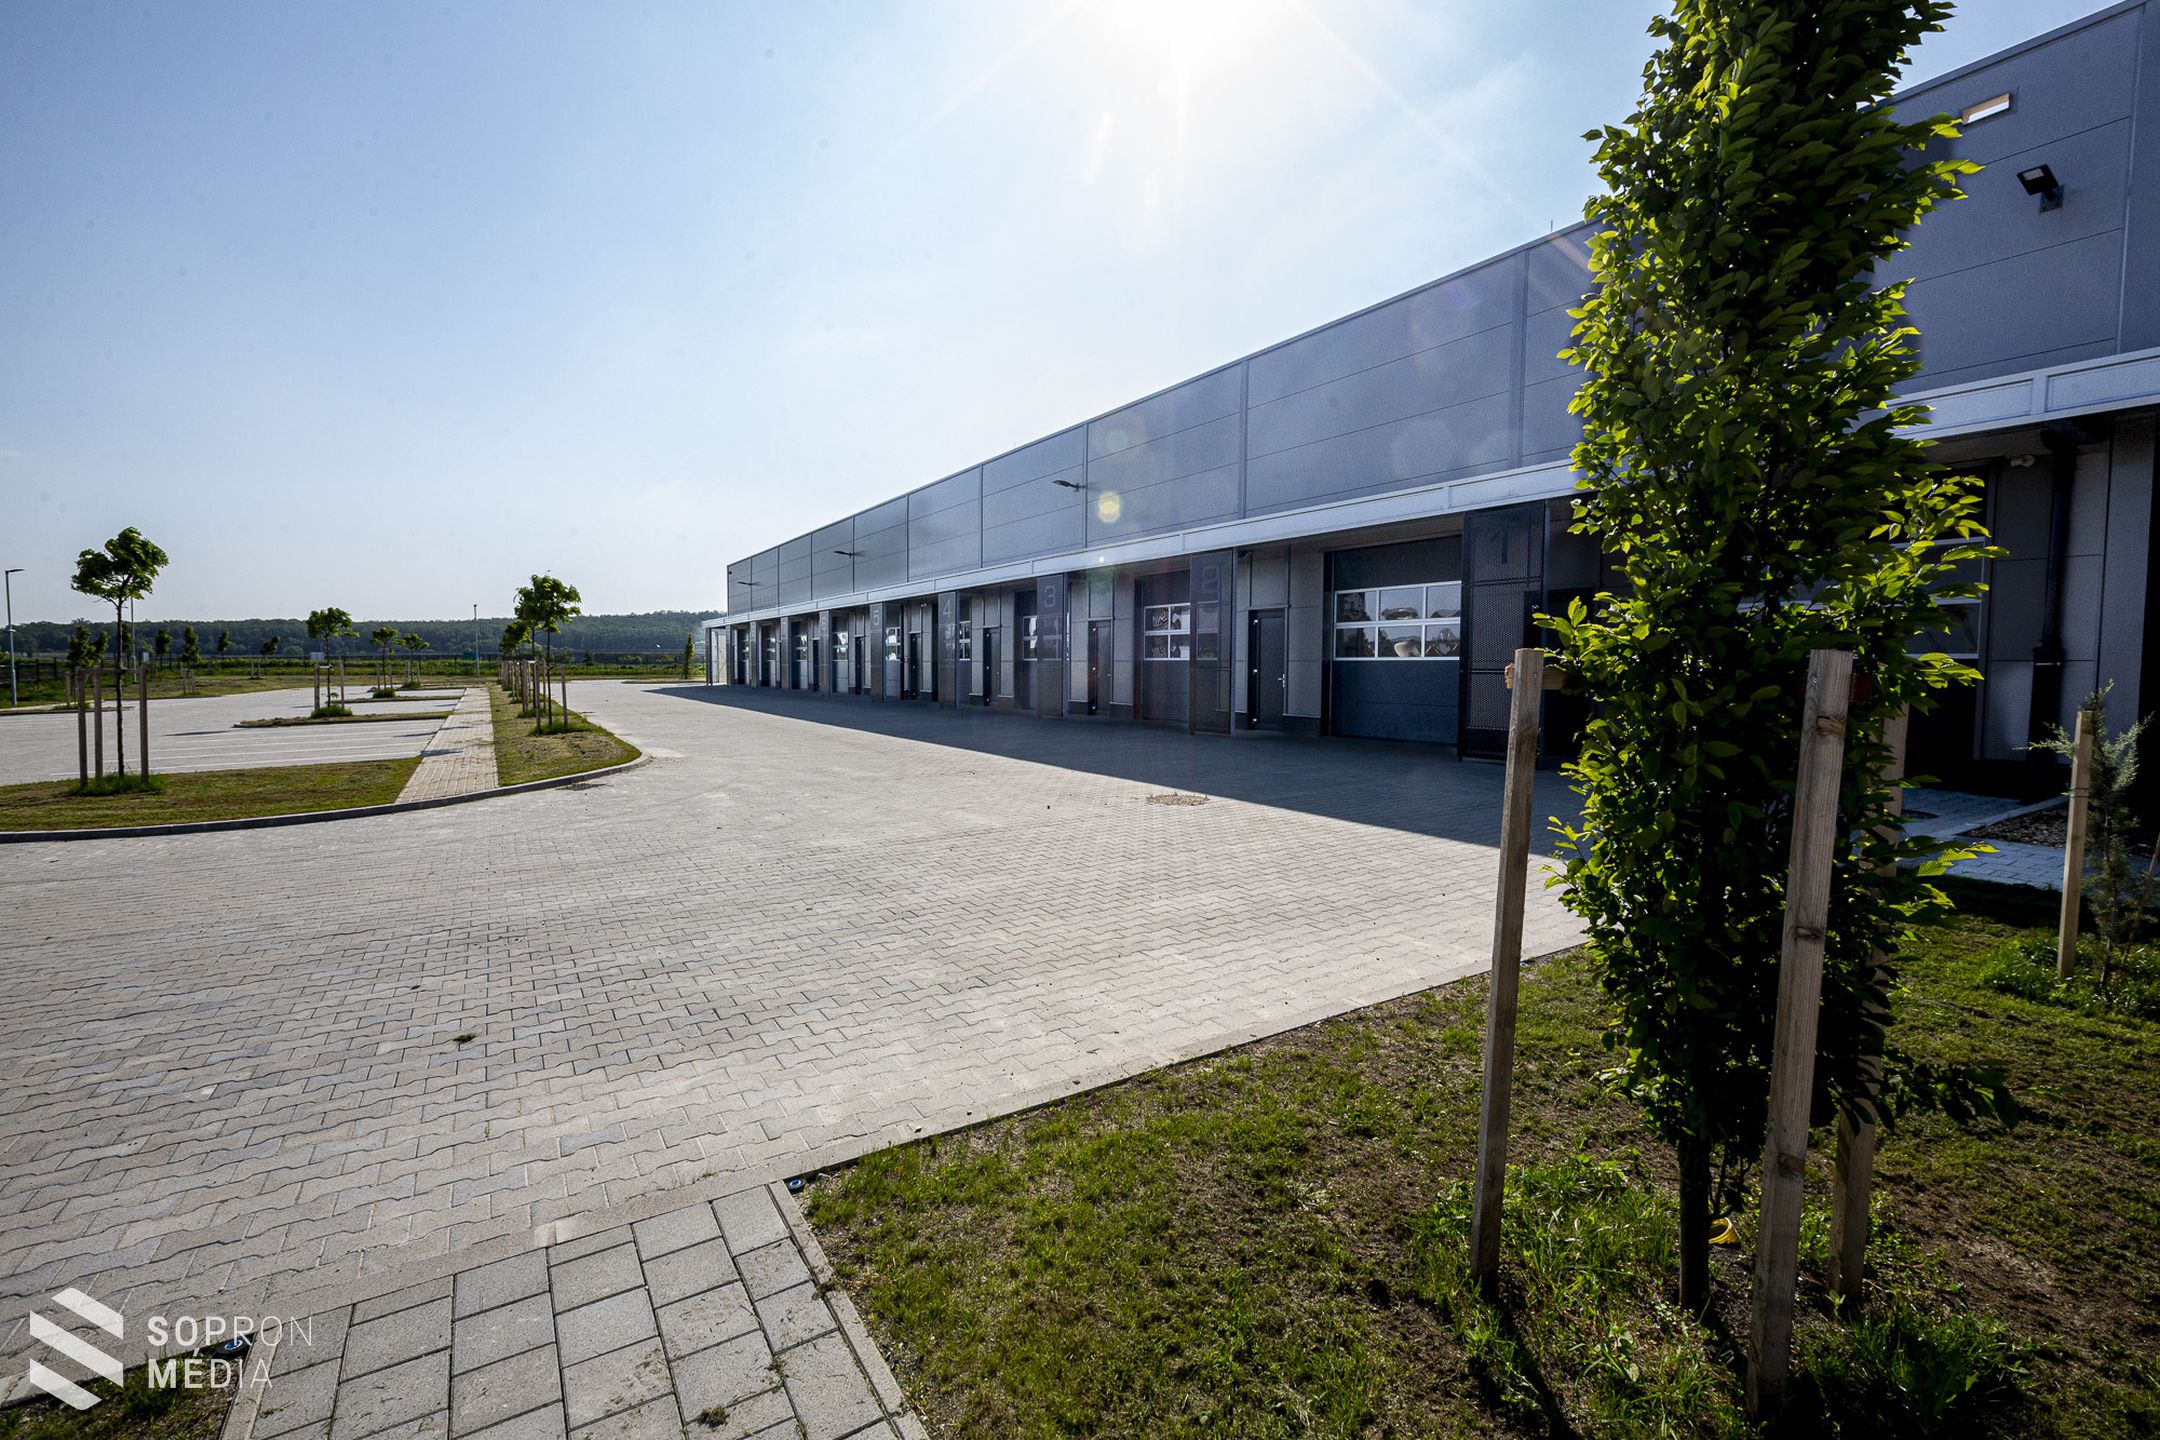 Nyitva áll a vállalkozások előtt az új soproni inkubátorház